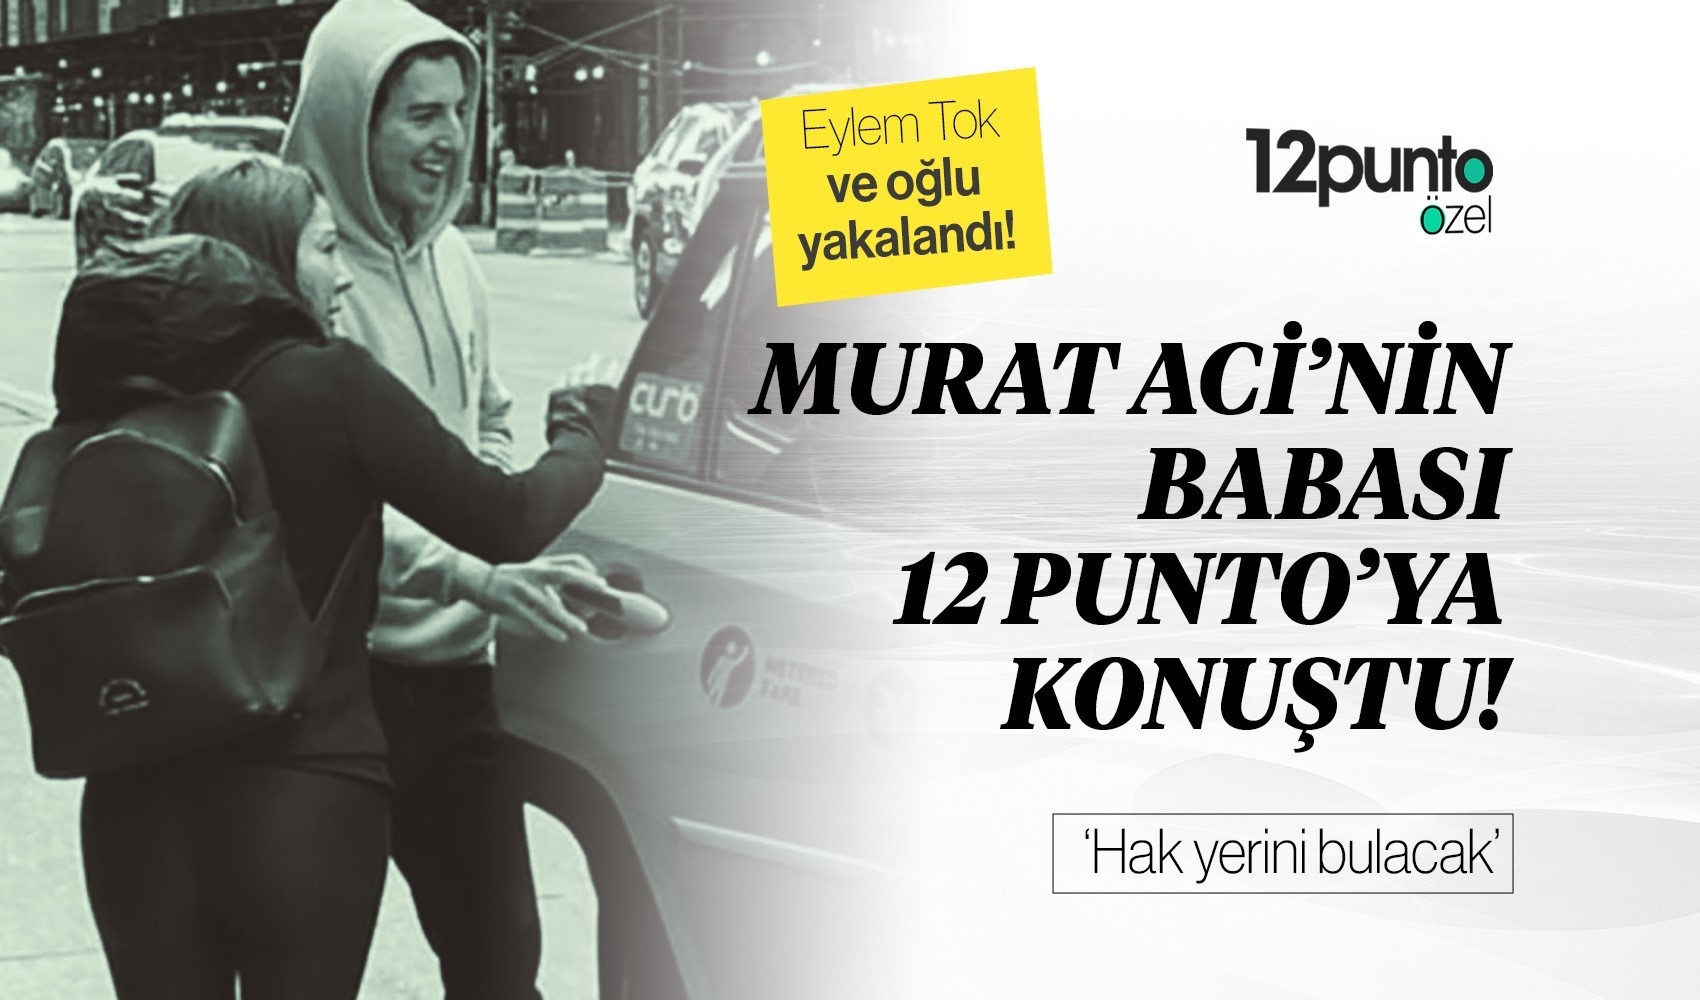 Eylem Tok ABD'de yakalandı... Murat Aci'nin babası 12punto'ya konuştu: 'Hak yerini bulacak'